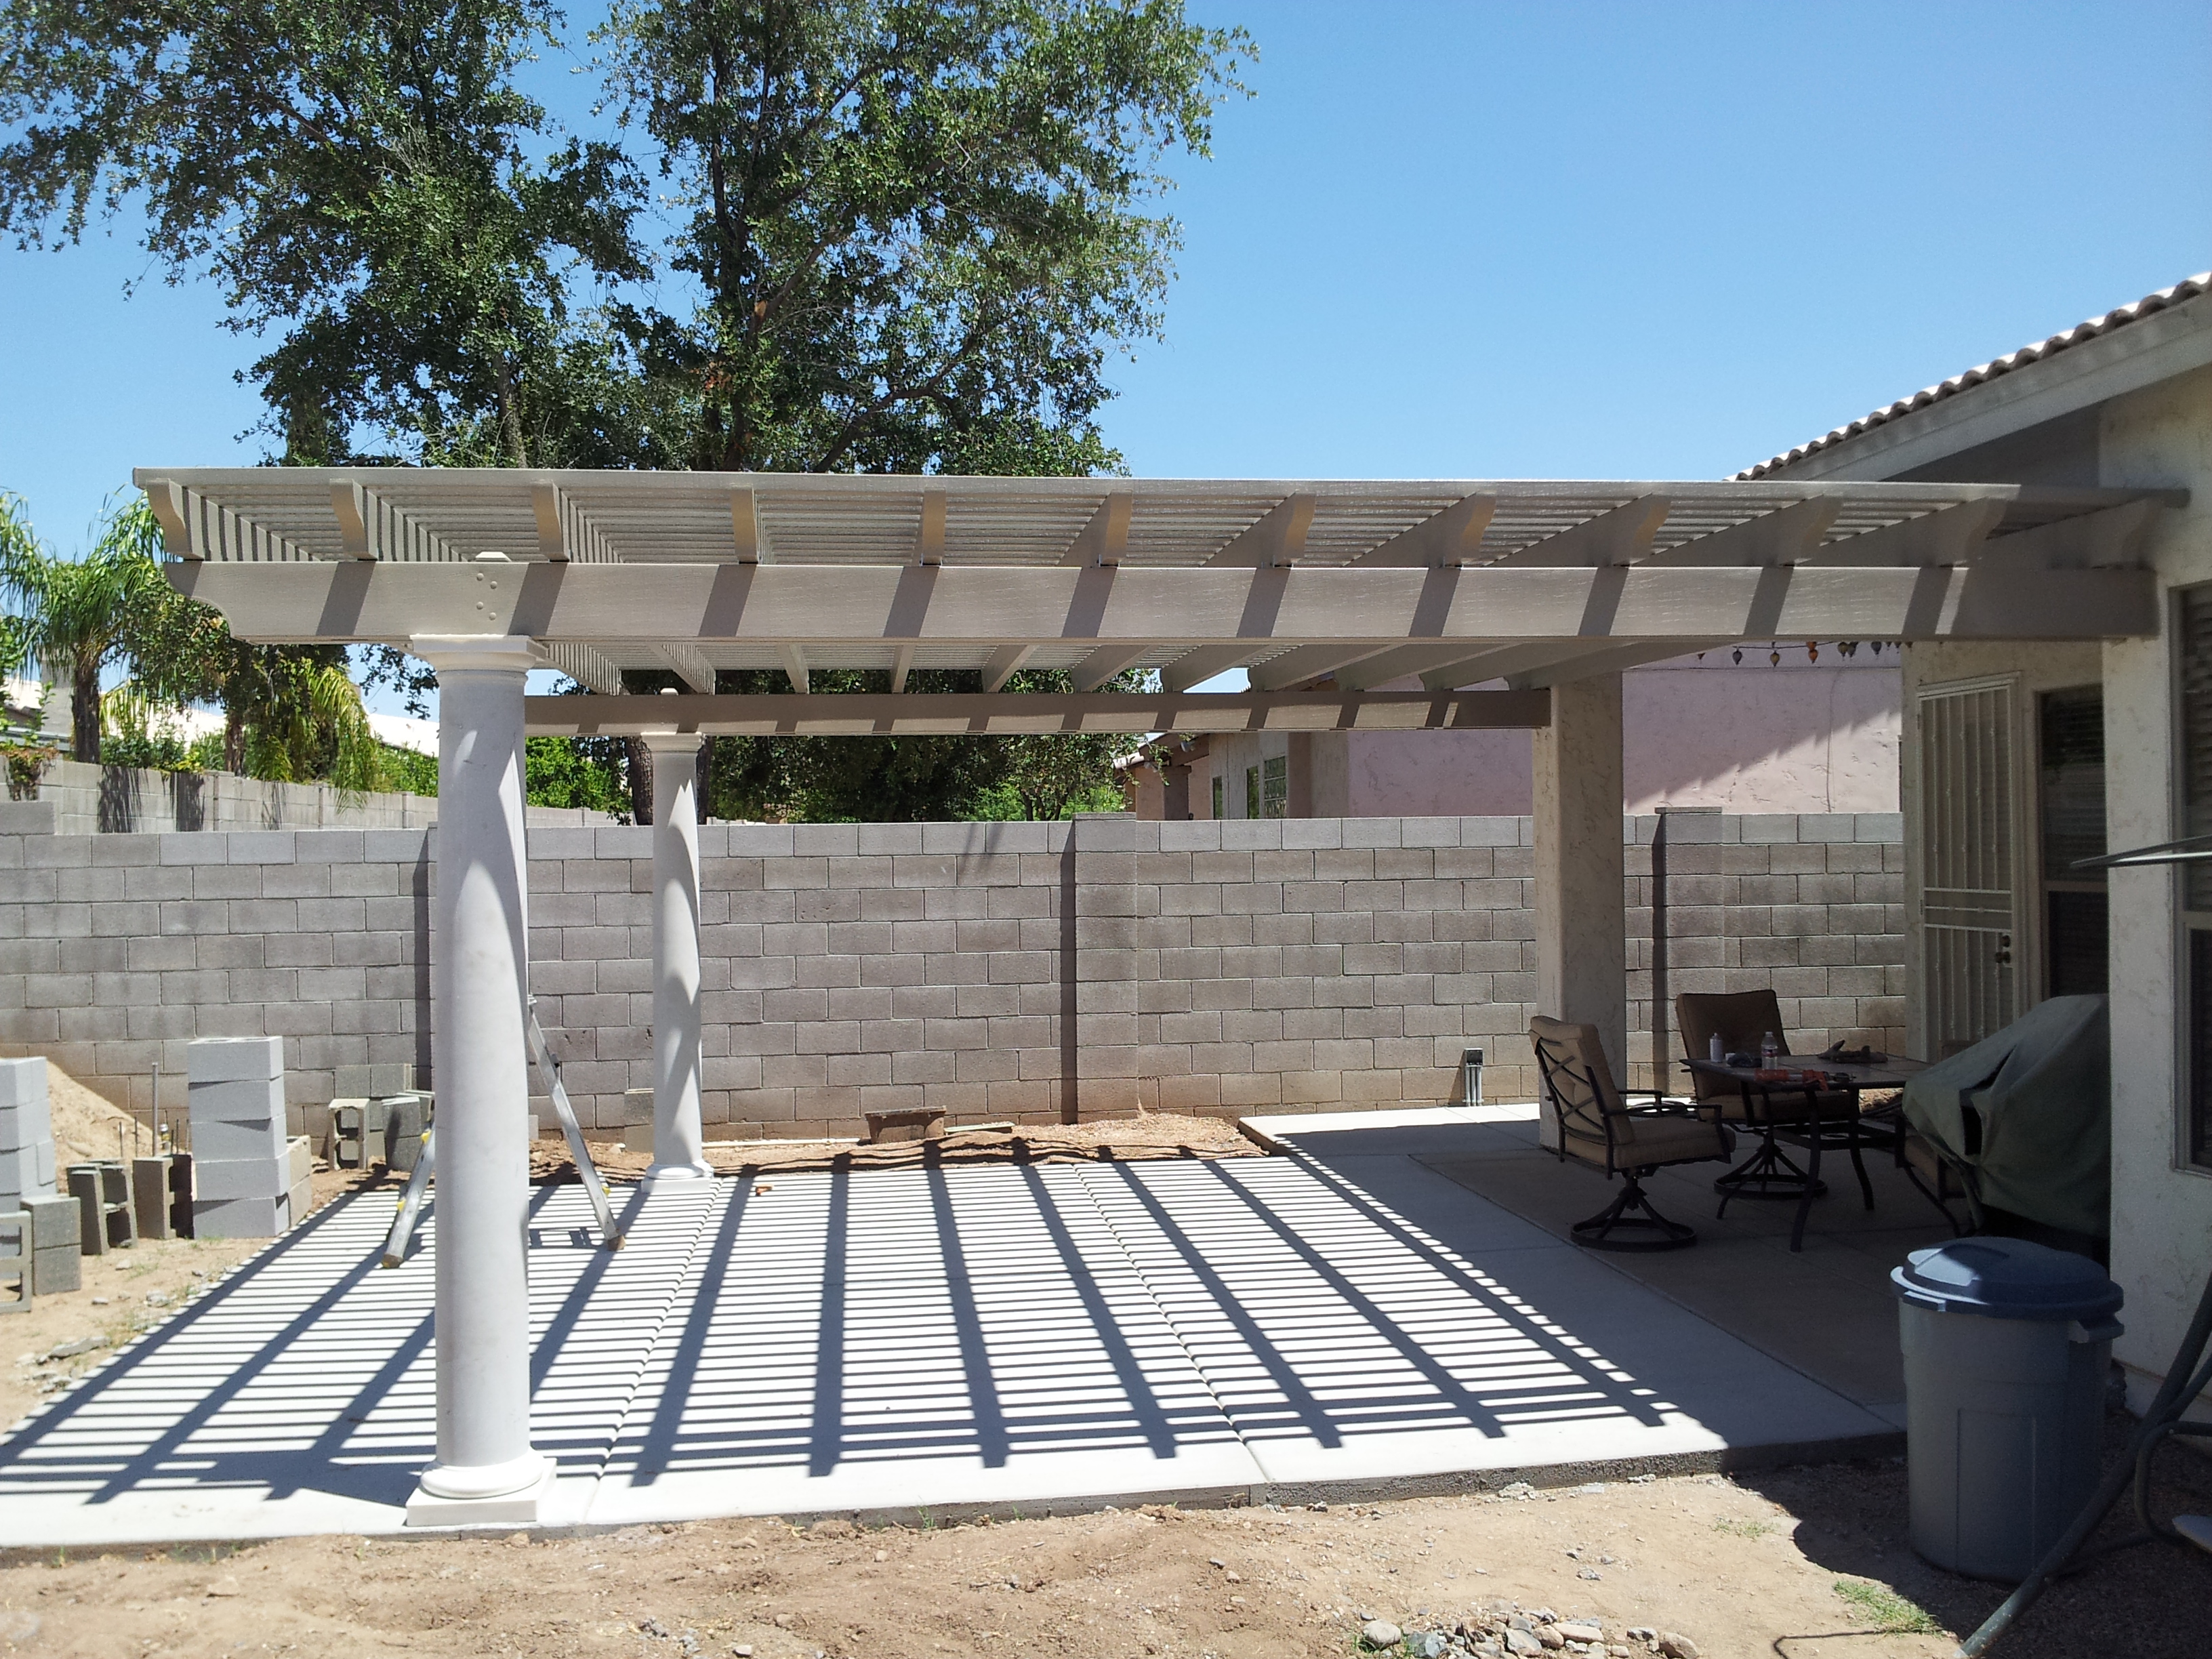  Aluminum  Patio  Covers  Phoenix AZ Backyard Pergola  Covers  